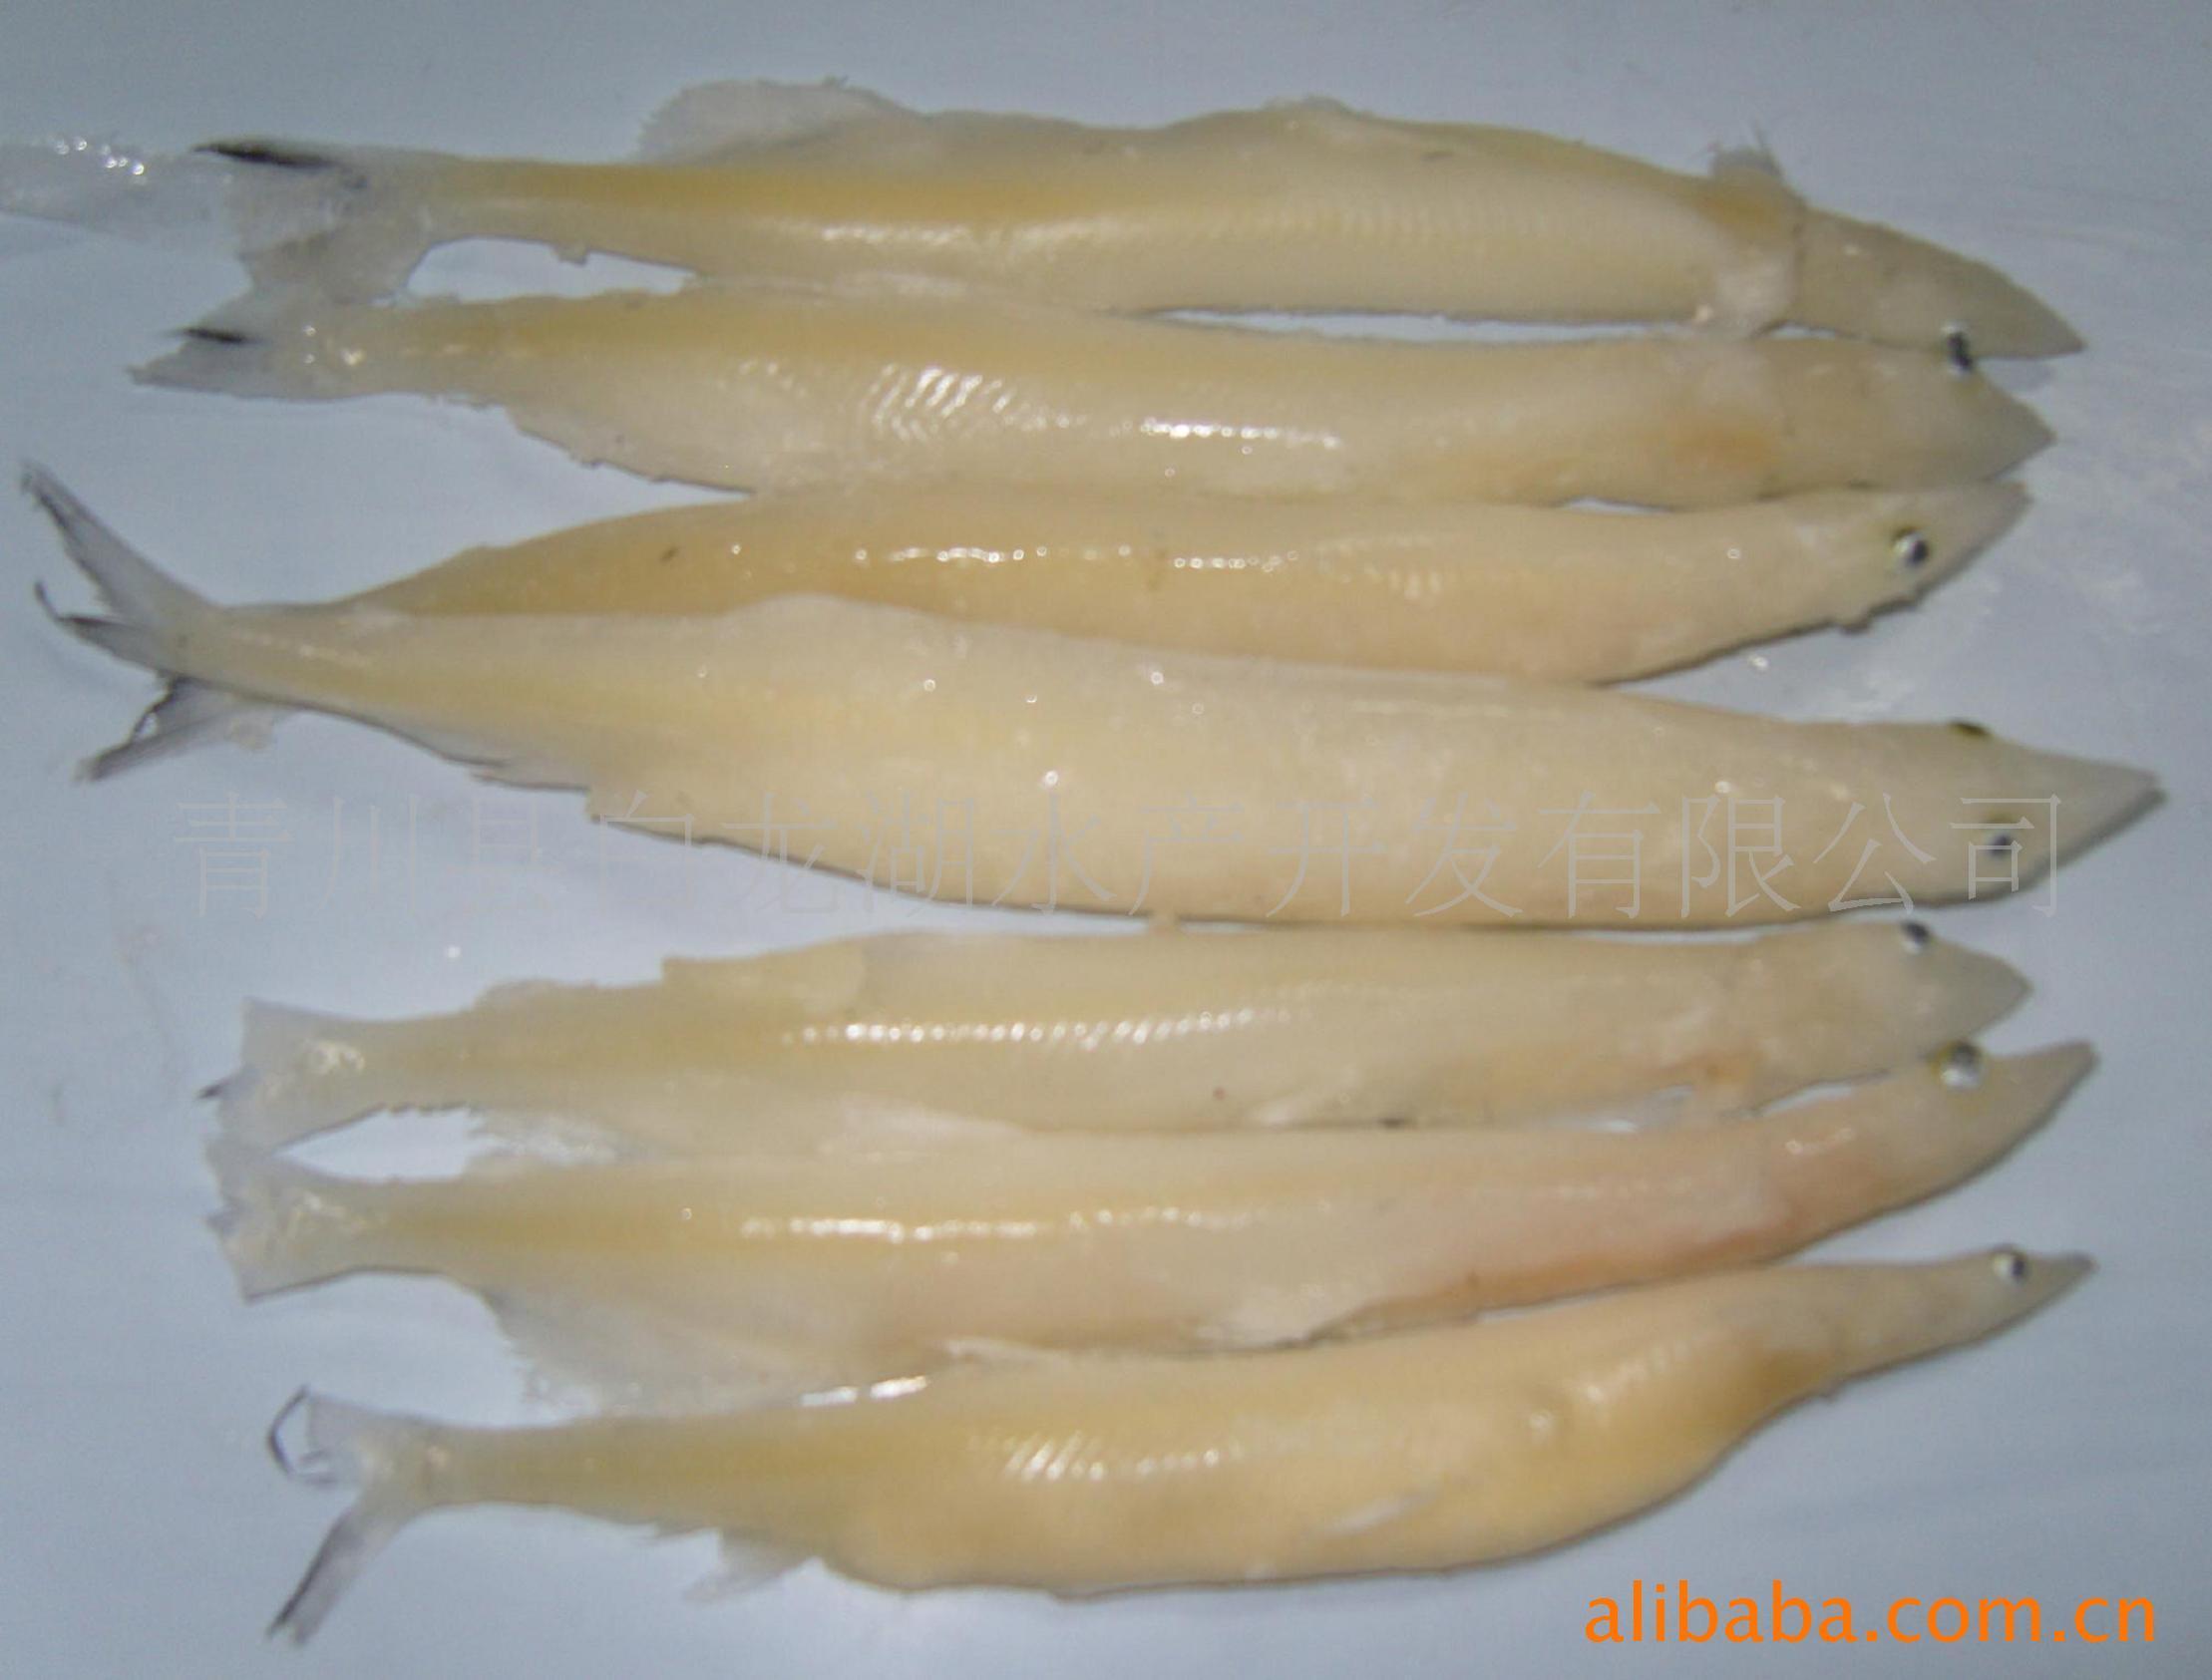 10.白肌银鱼-中国南方淡水鱼类-图片